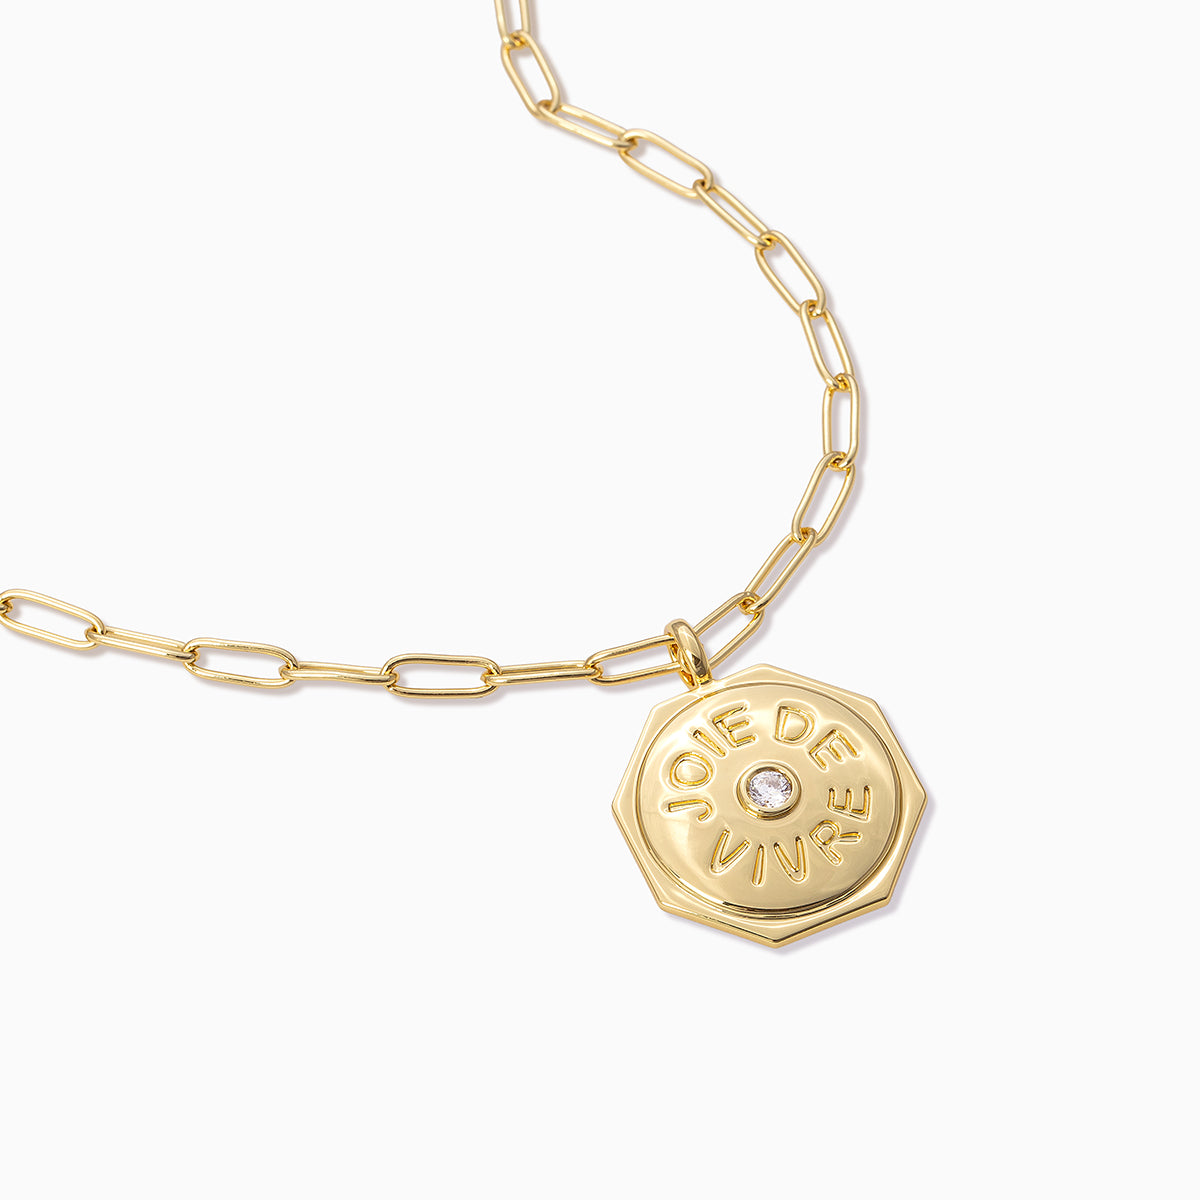 Joie De Vivre Pendant Necklace | Gold | Product Detail Image | Uncommon James